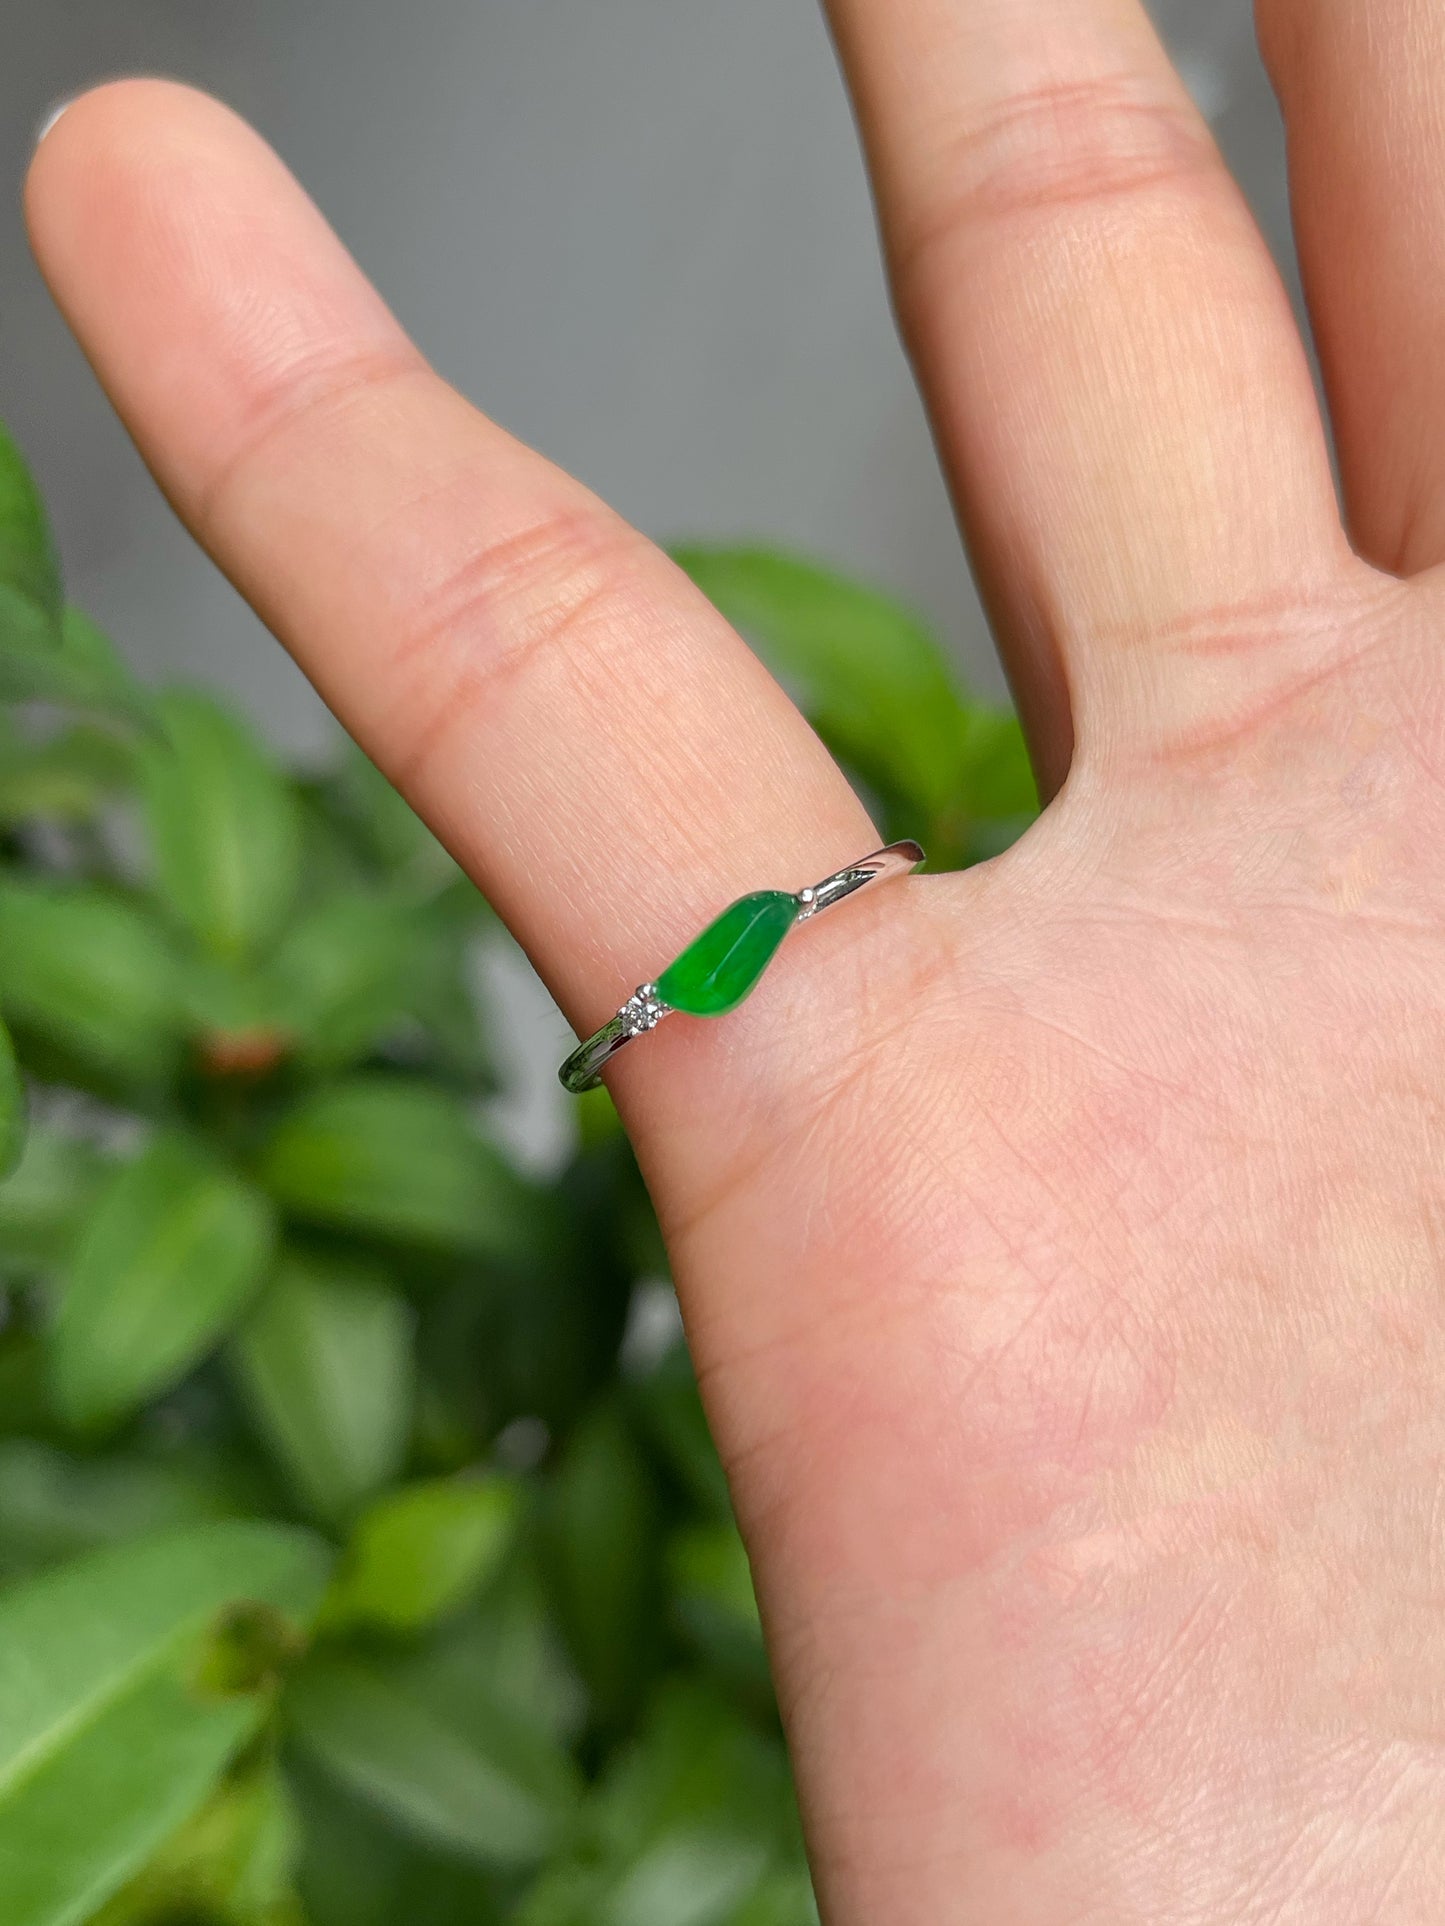 Green Jade Ring (NJR103)